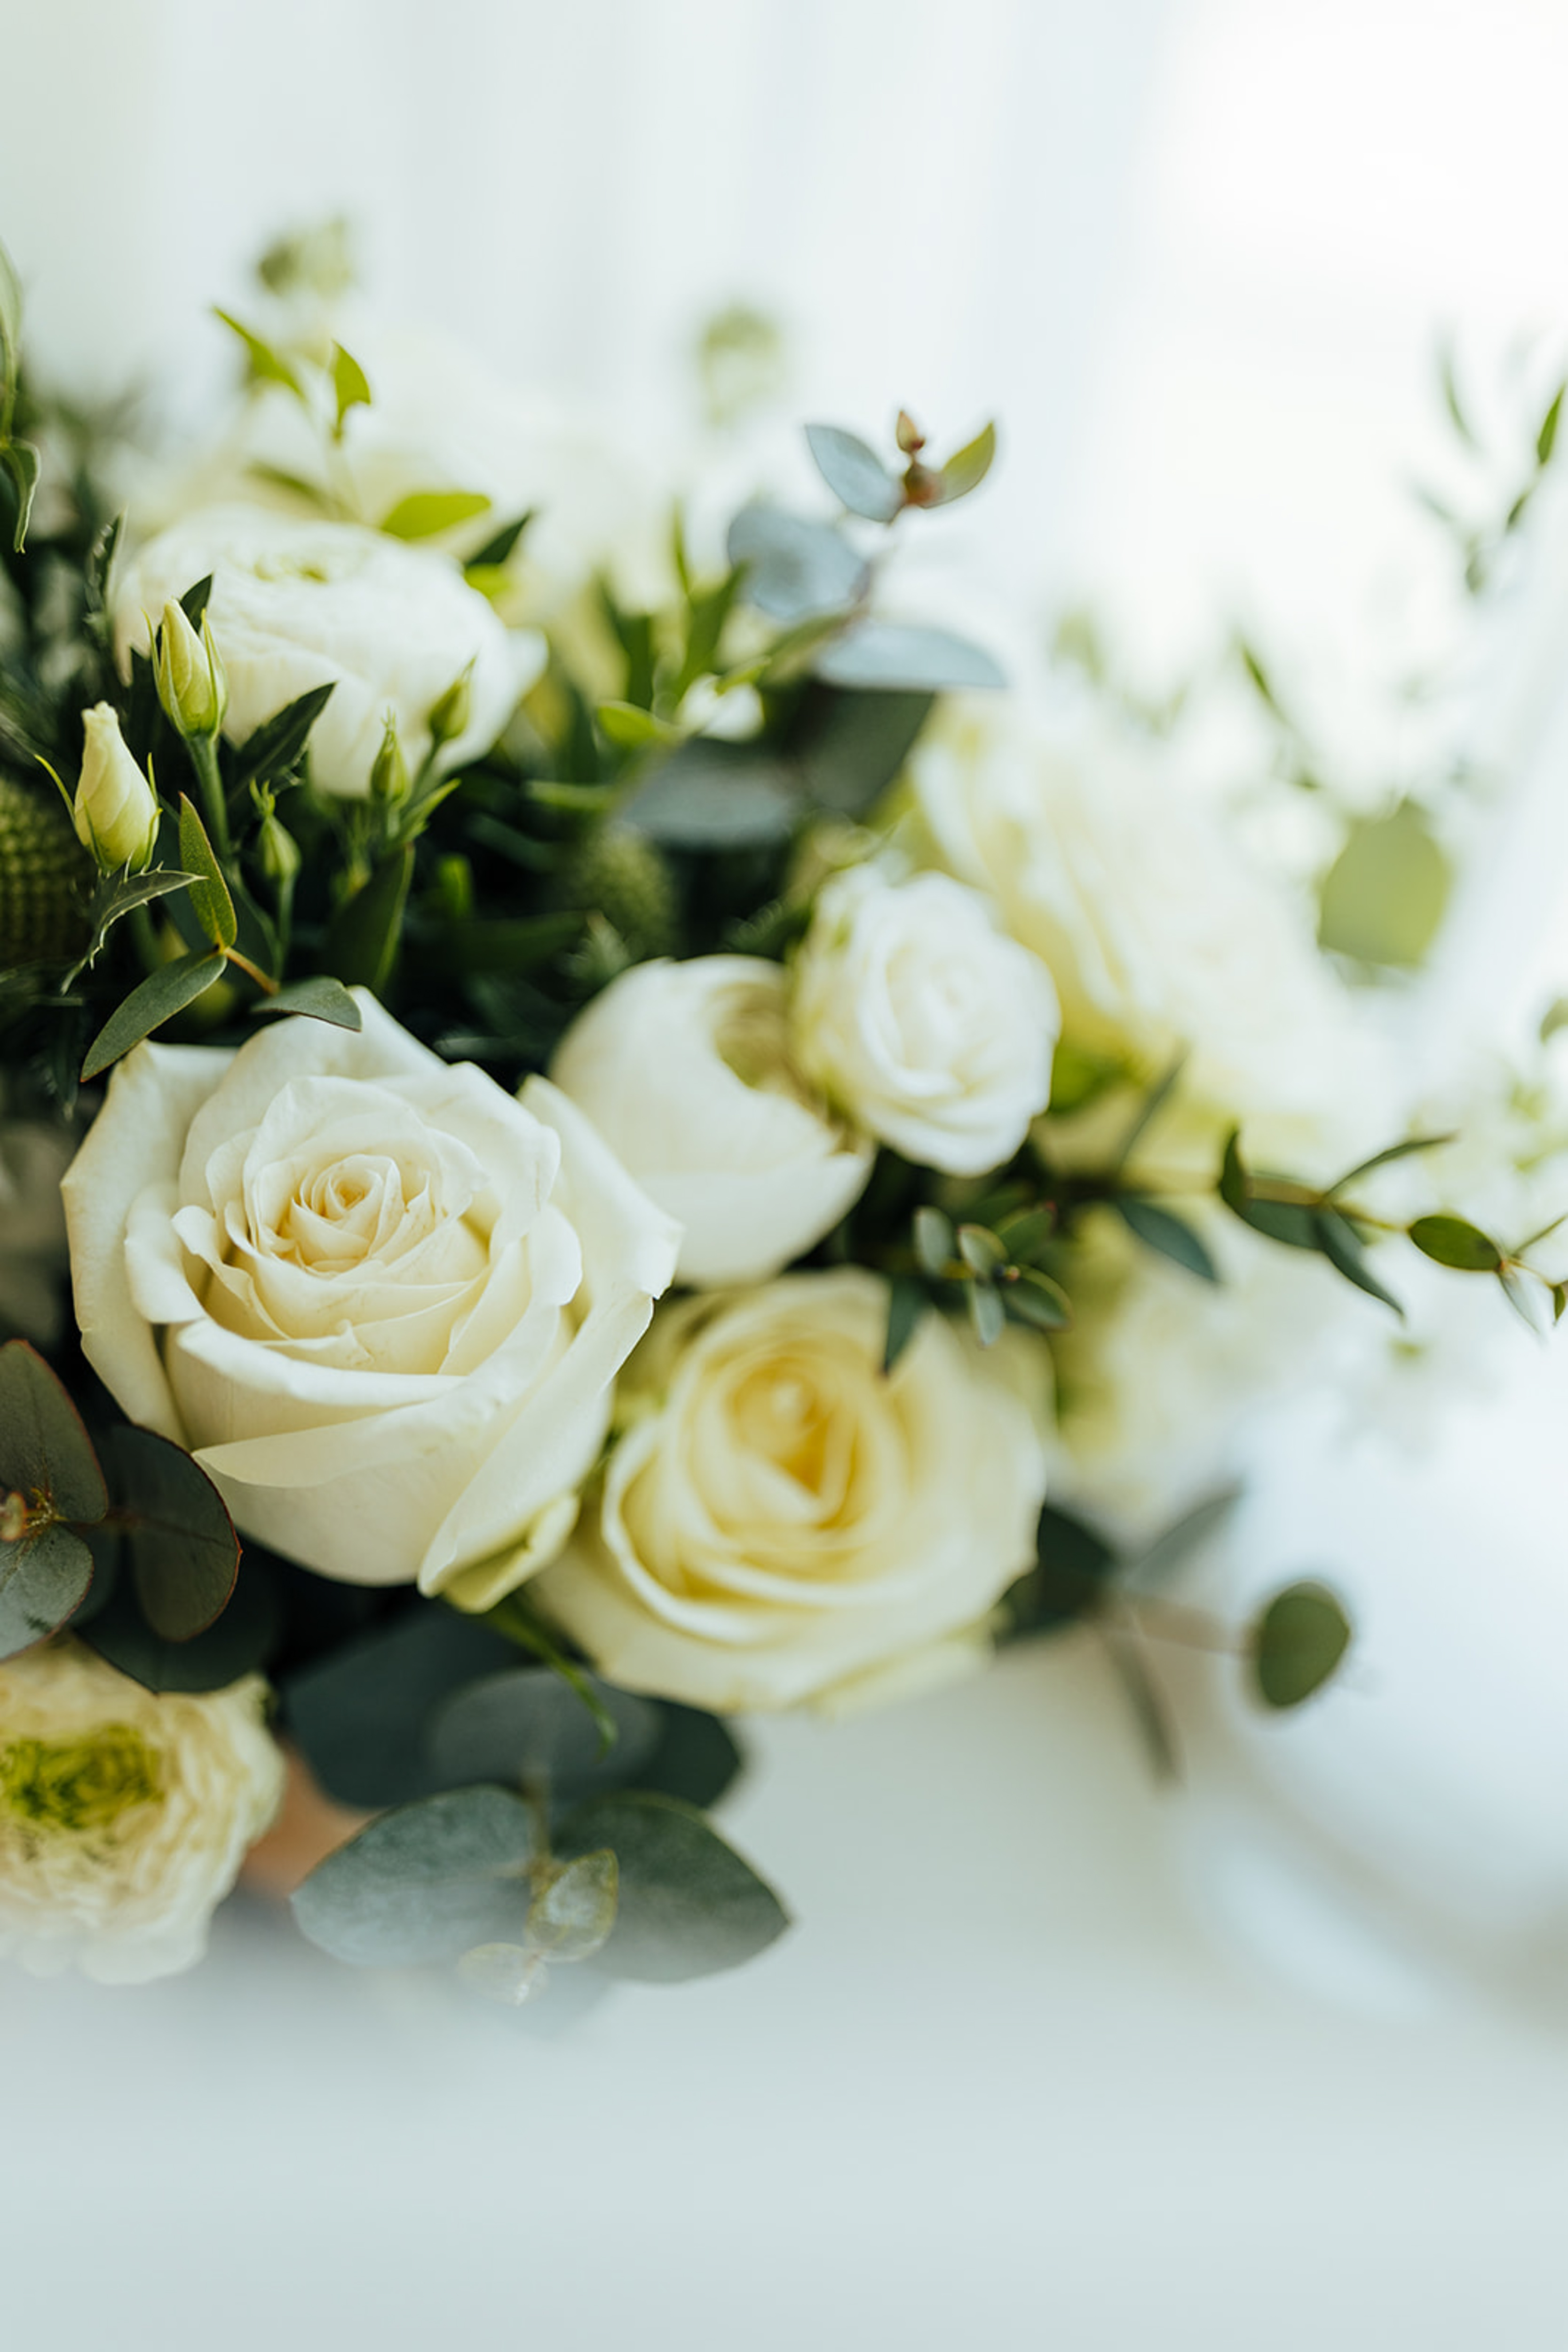 Minimal white and green bridal bouquet. Rushton Hall Wedding Photography. Documentary UK Wedding Photographer. Aimee Joy Photography.